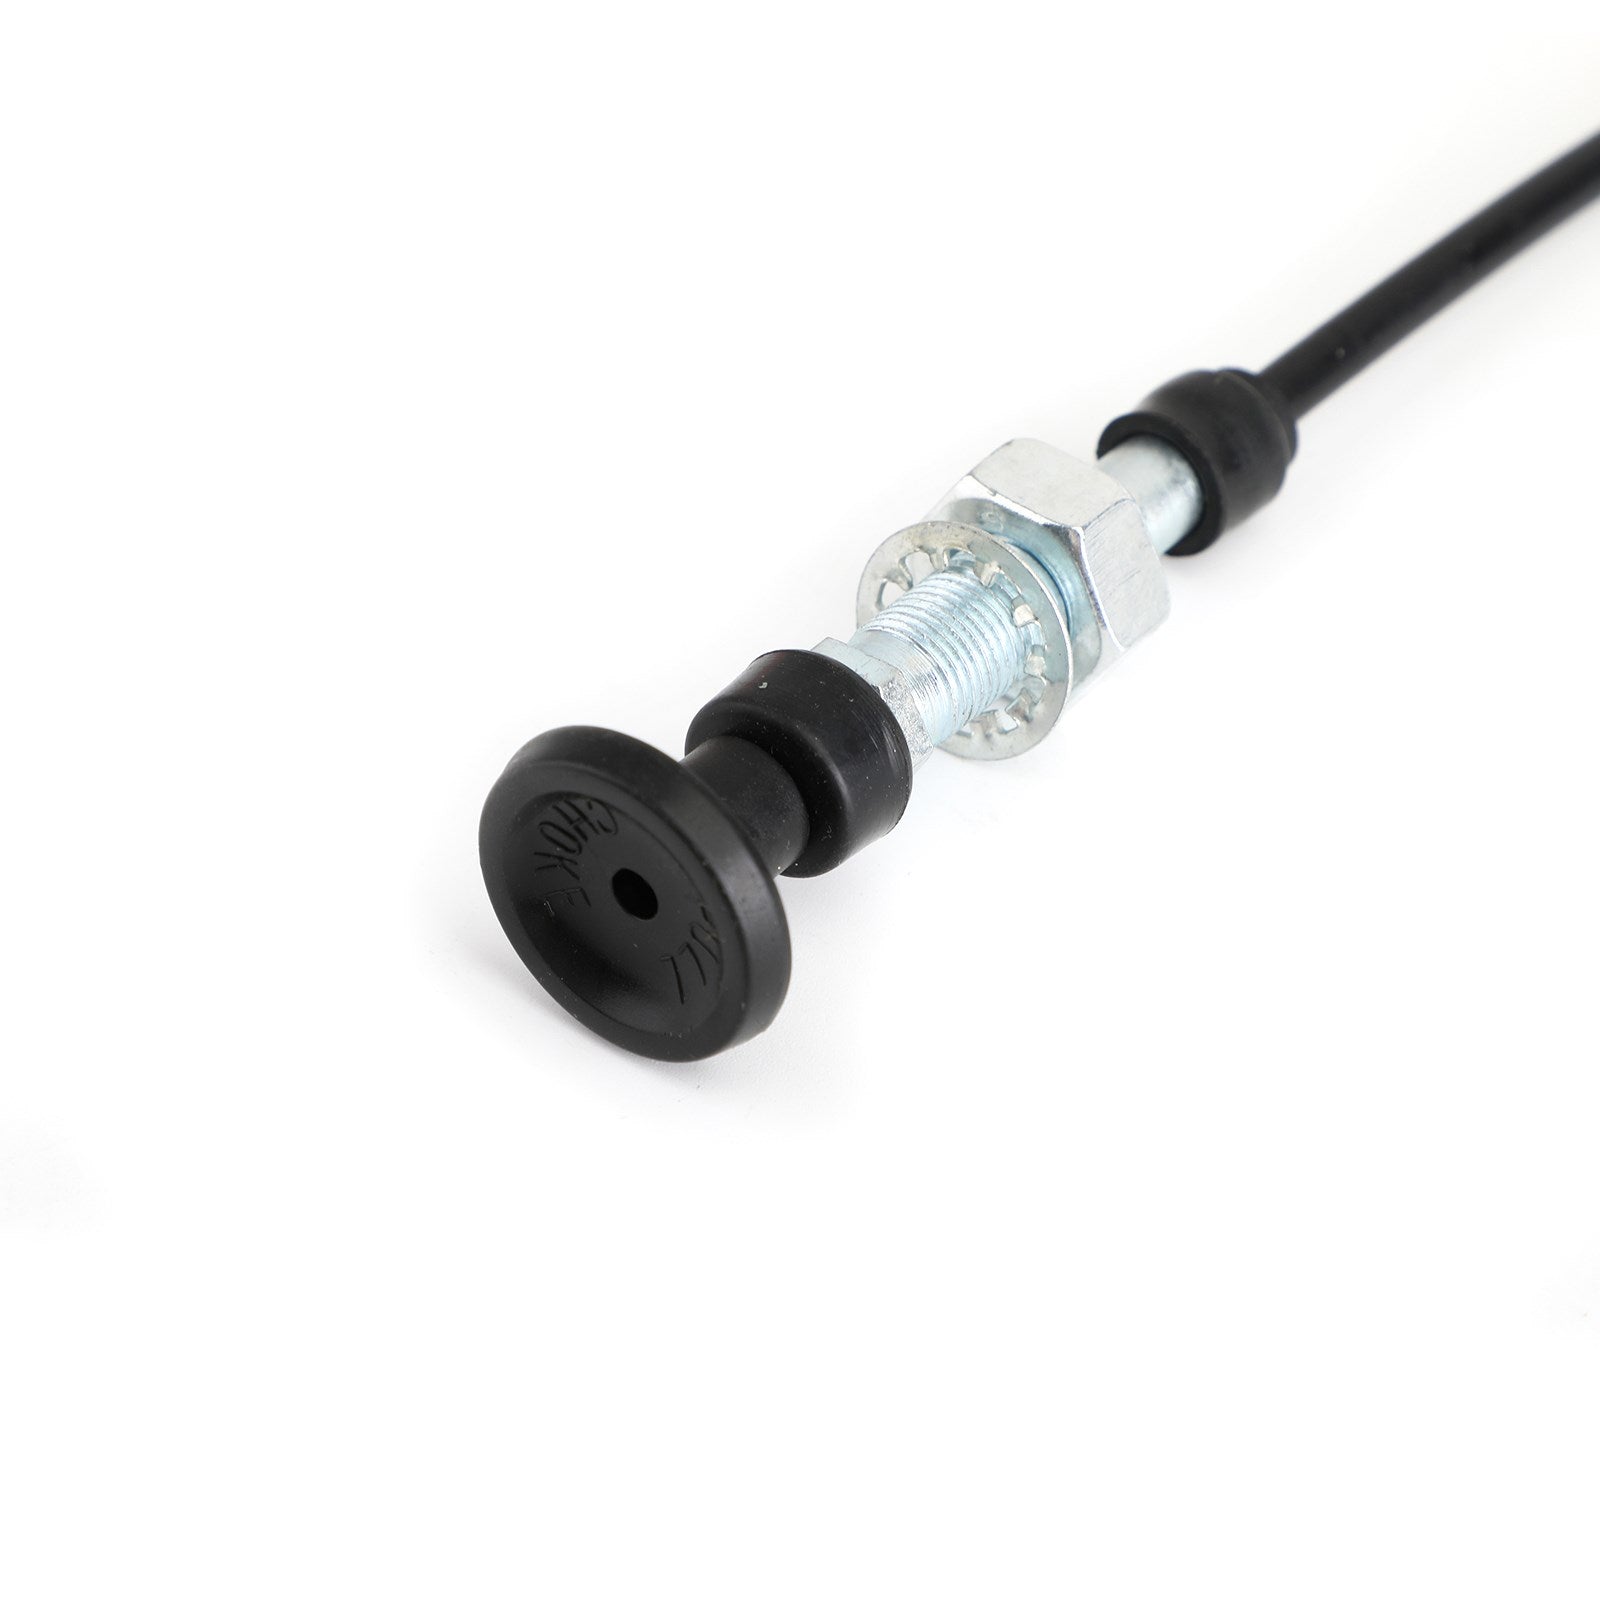 Vergaser-Choke-Kabel für Harley Mikuni Dyna Electra Glide HSR42 HSR45 48